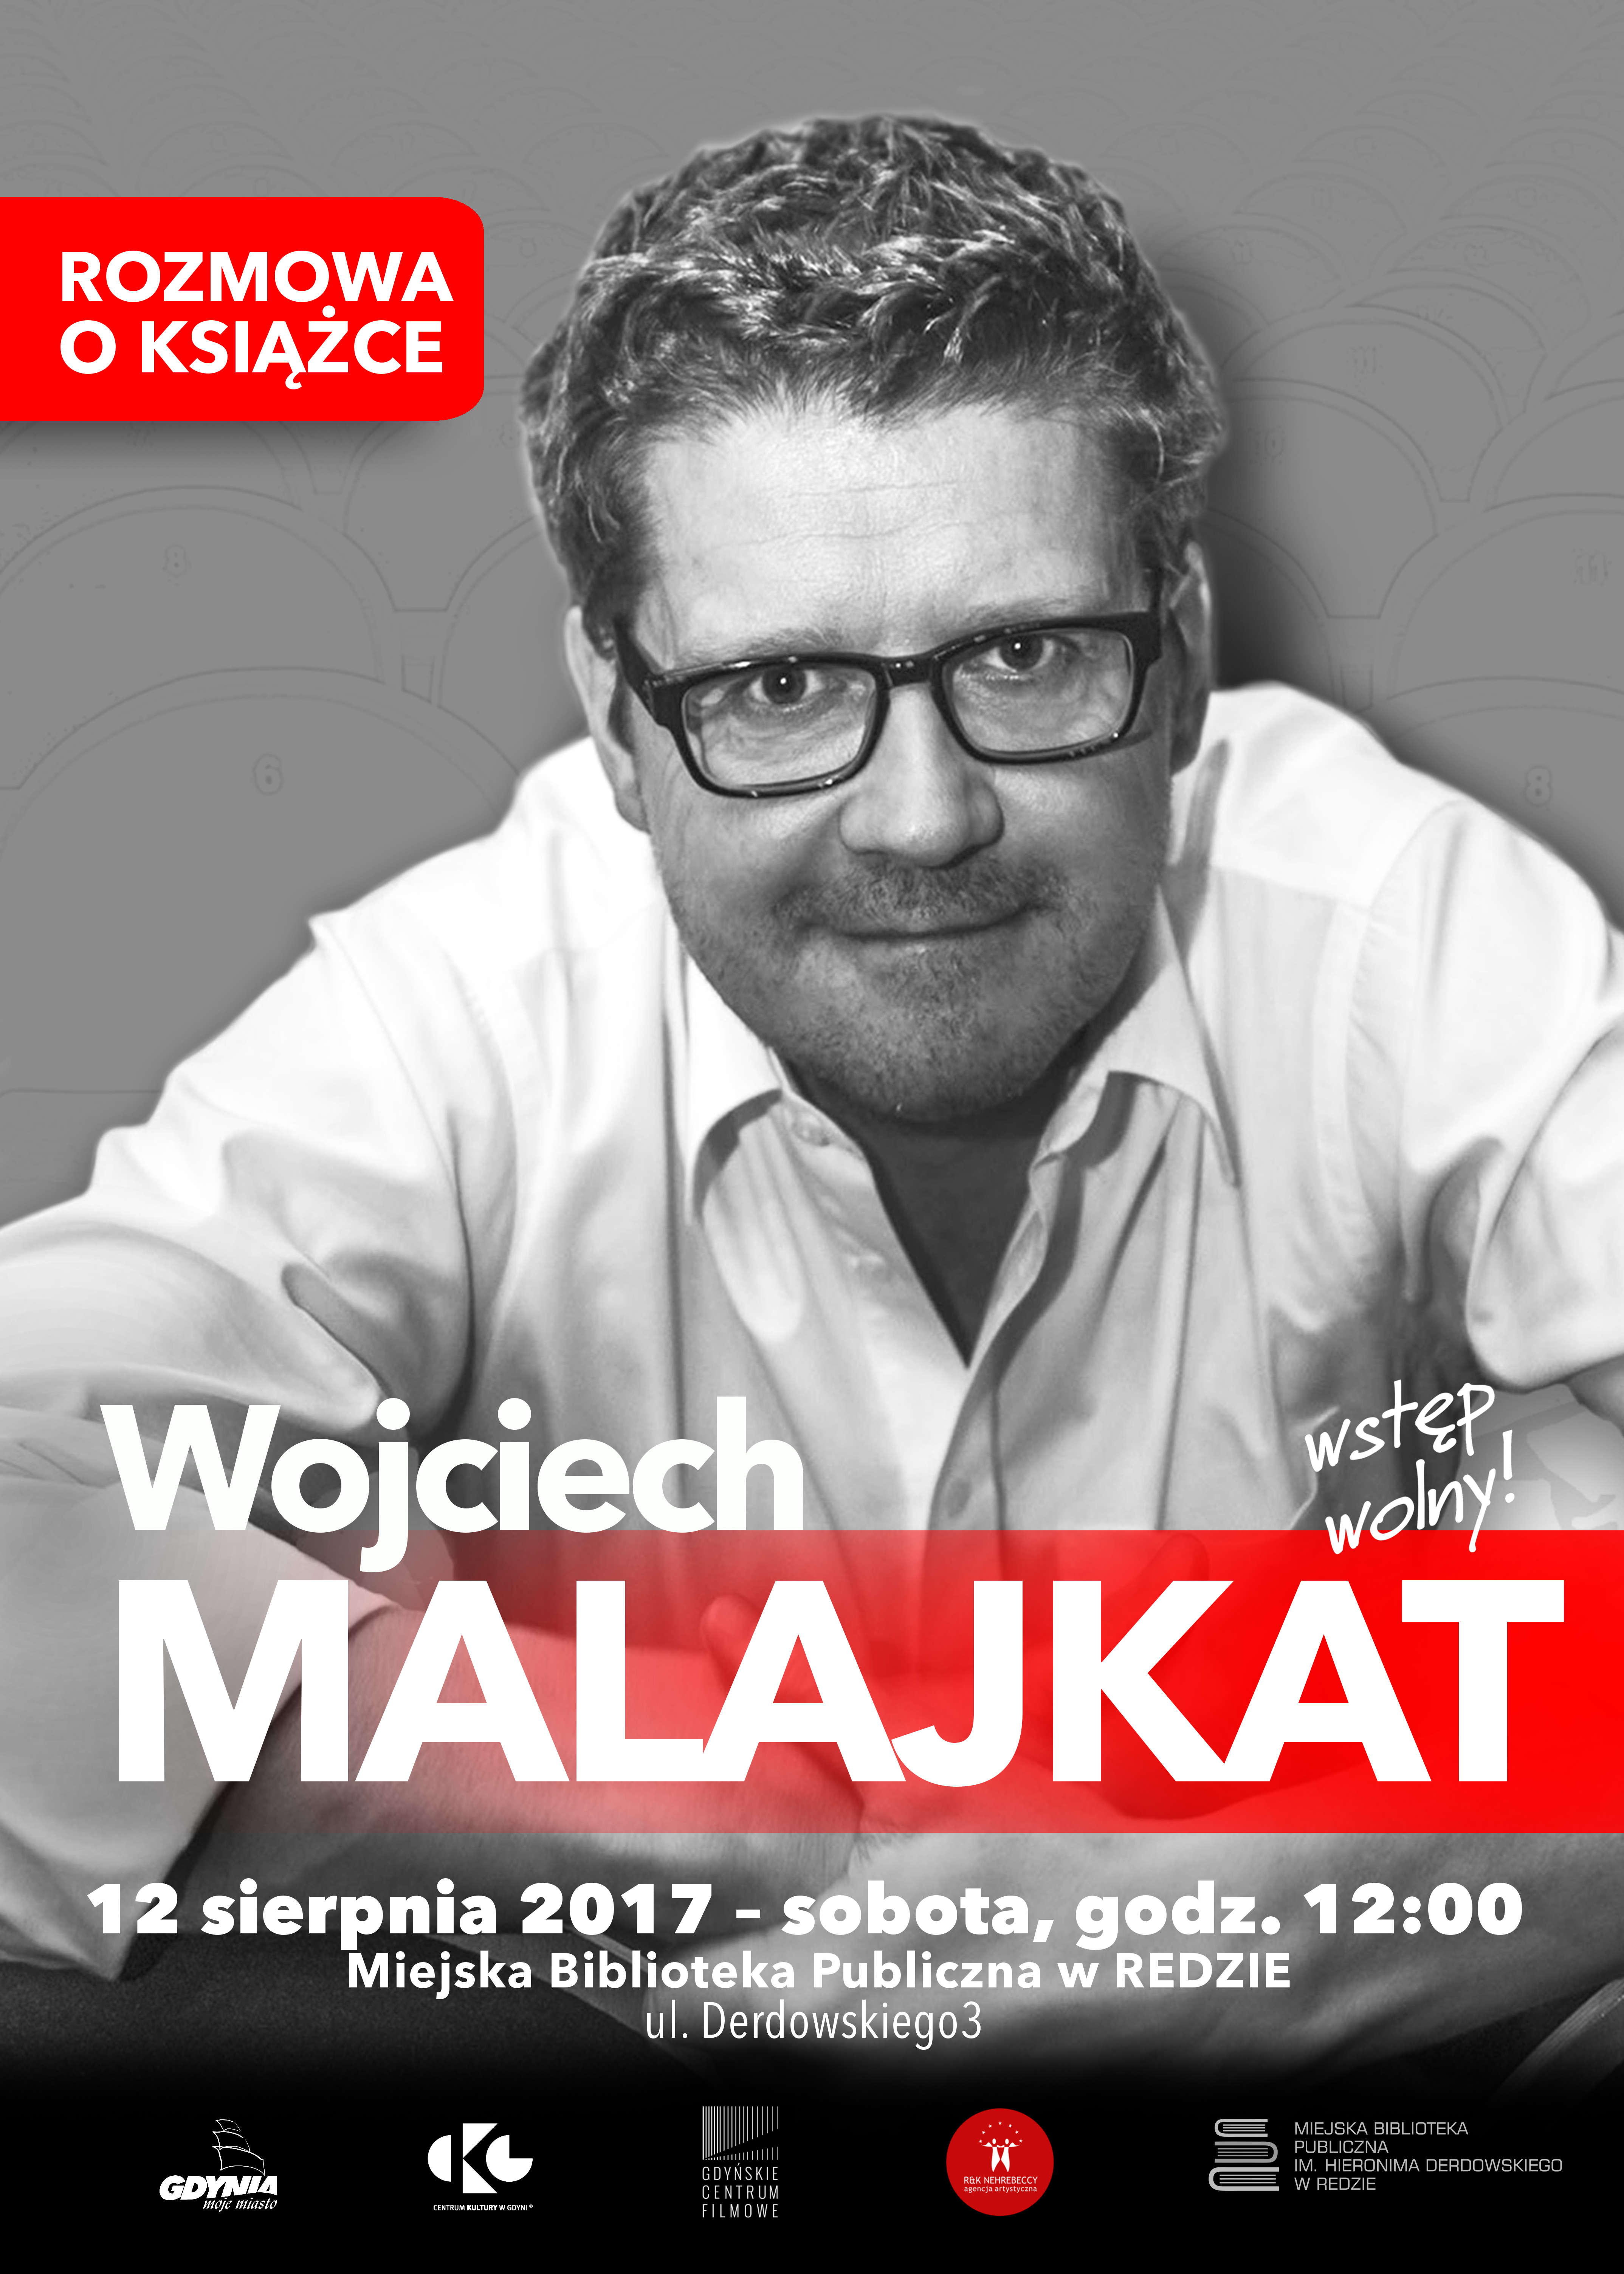 Wojciech Malajkat w redzkiej bibliotece